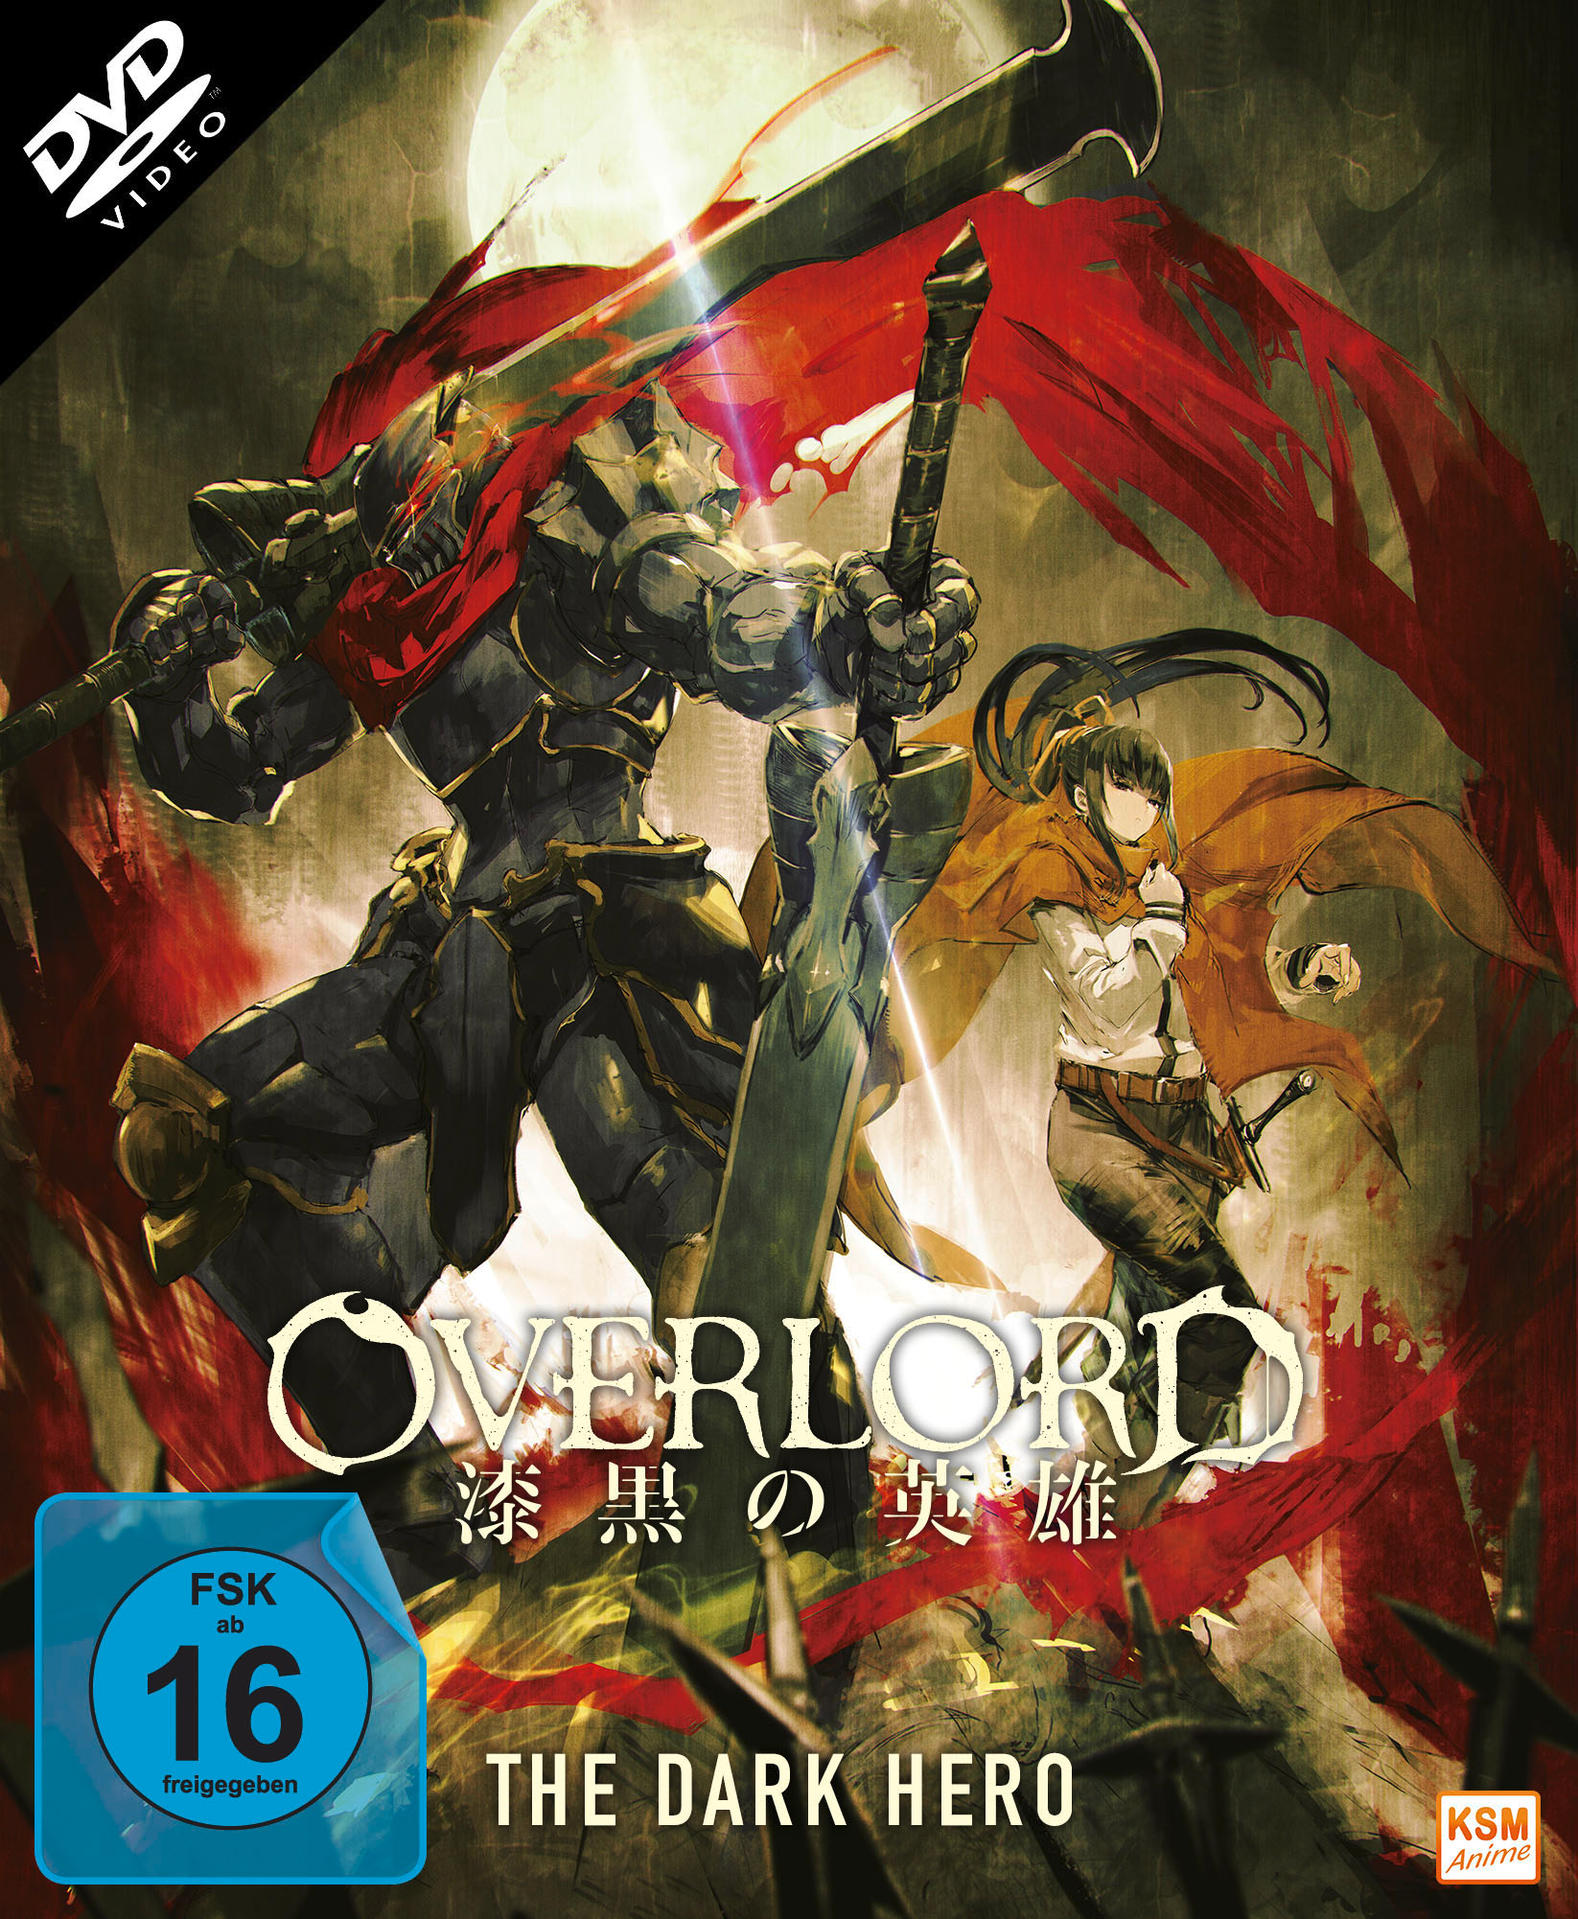 Dark Overlord DVD - The Hero